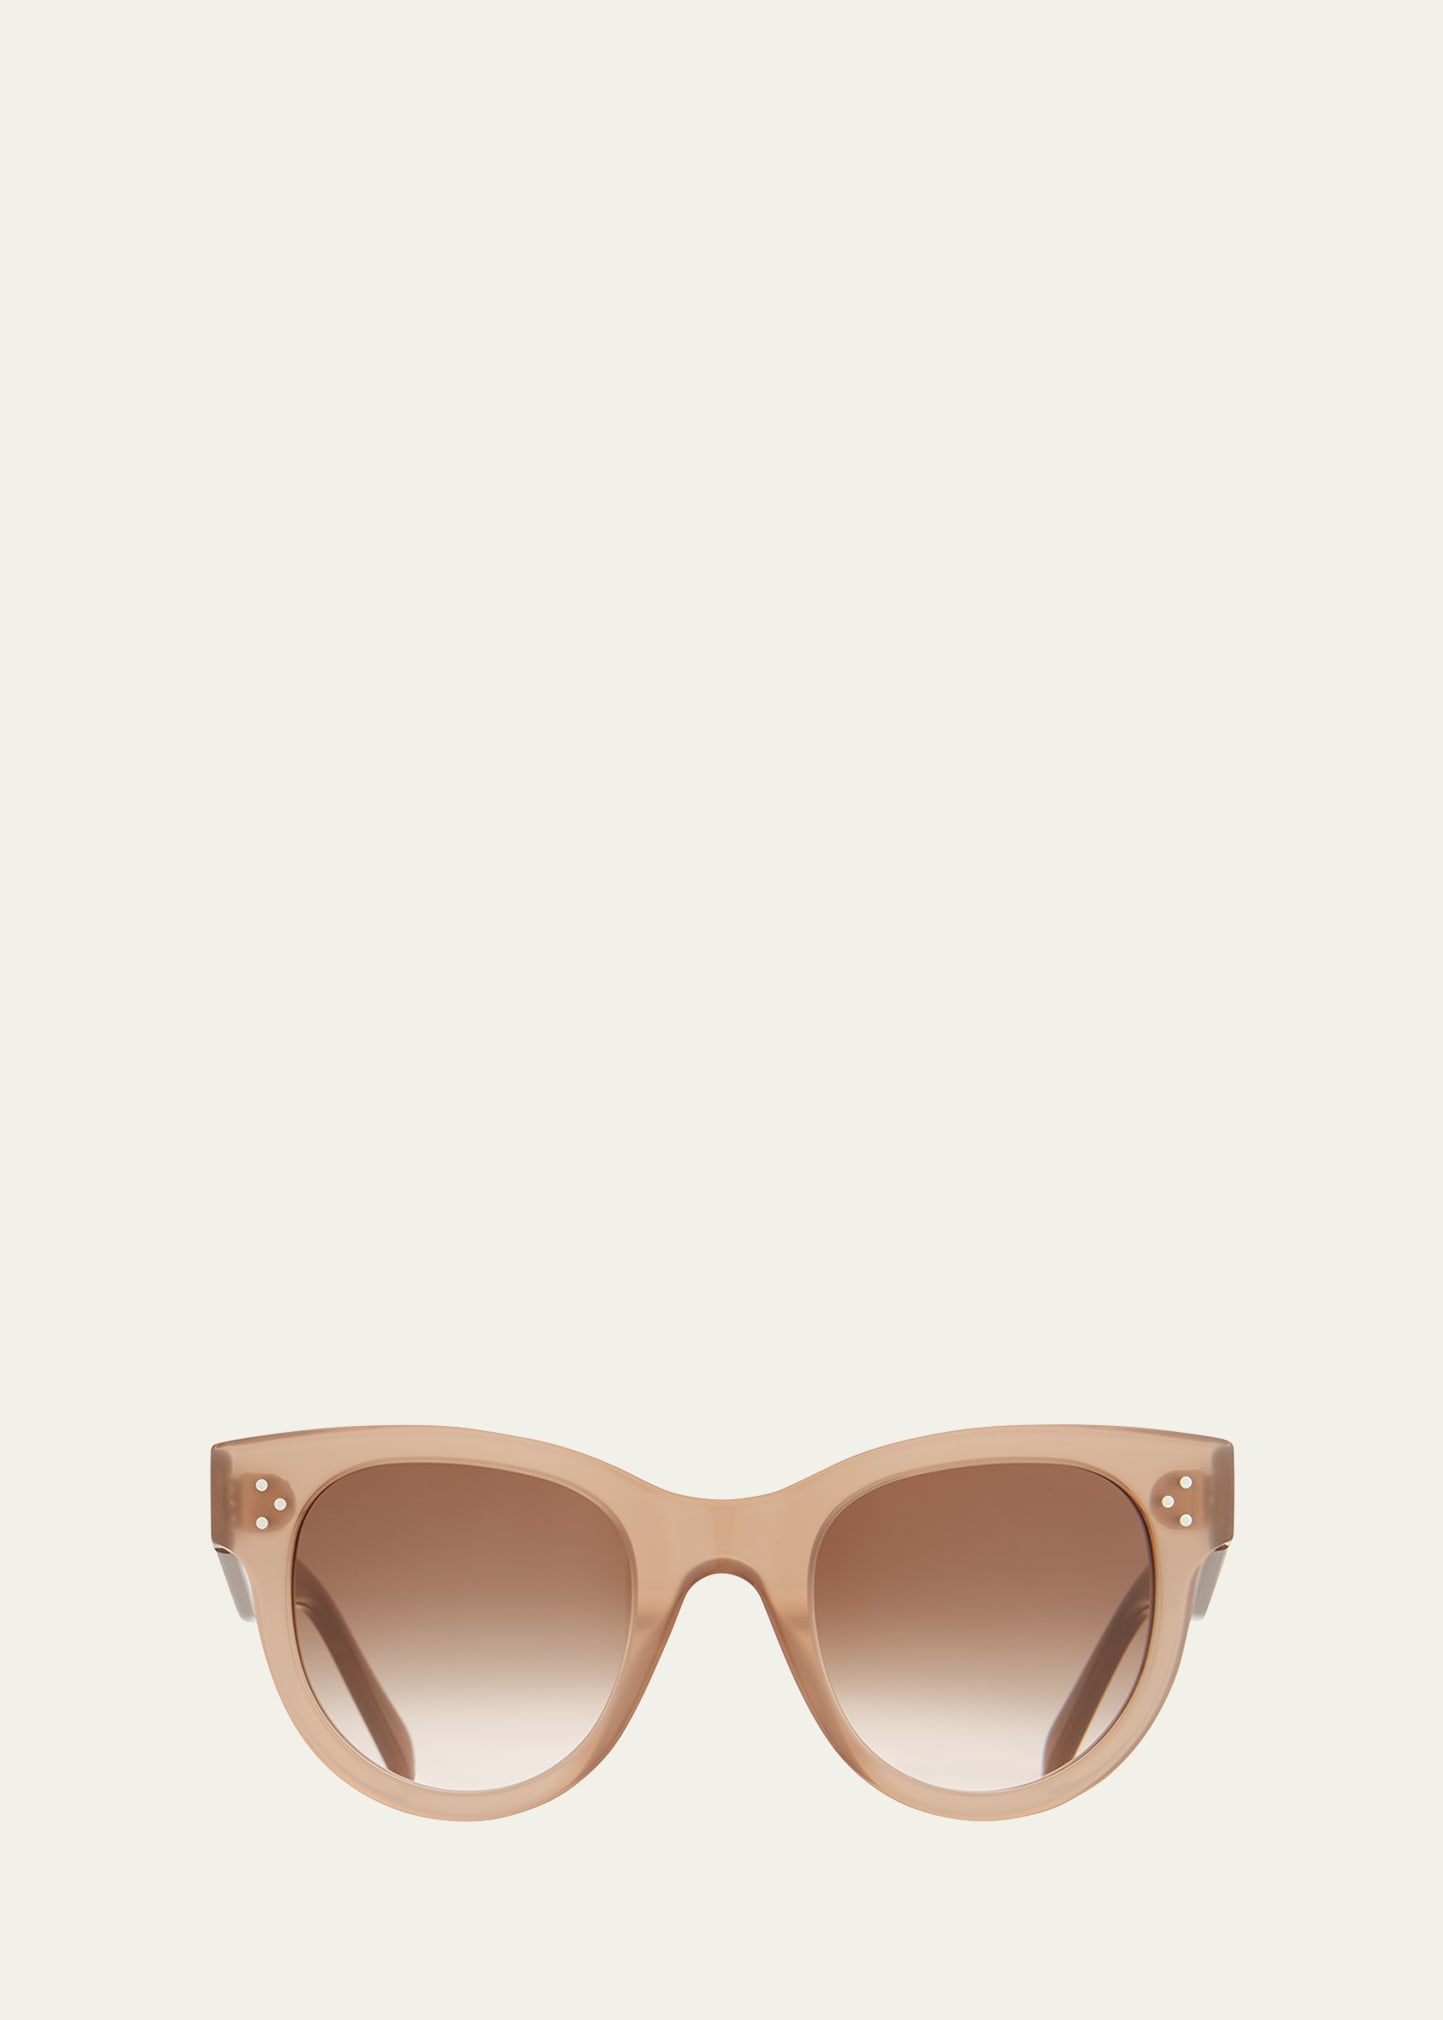 Celine Round Acetate Sunglasses In Translucent Brown